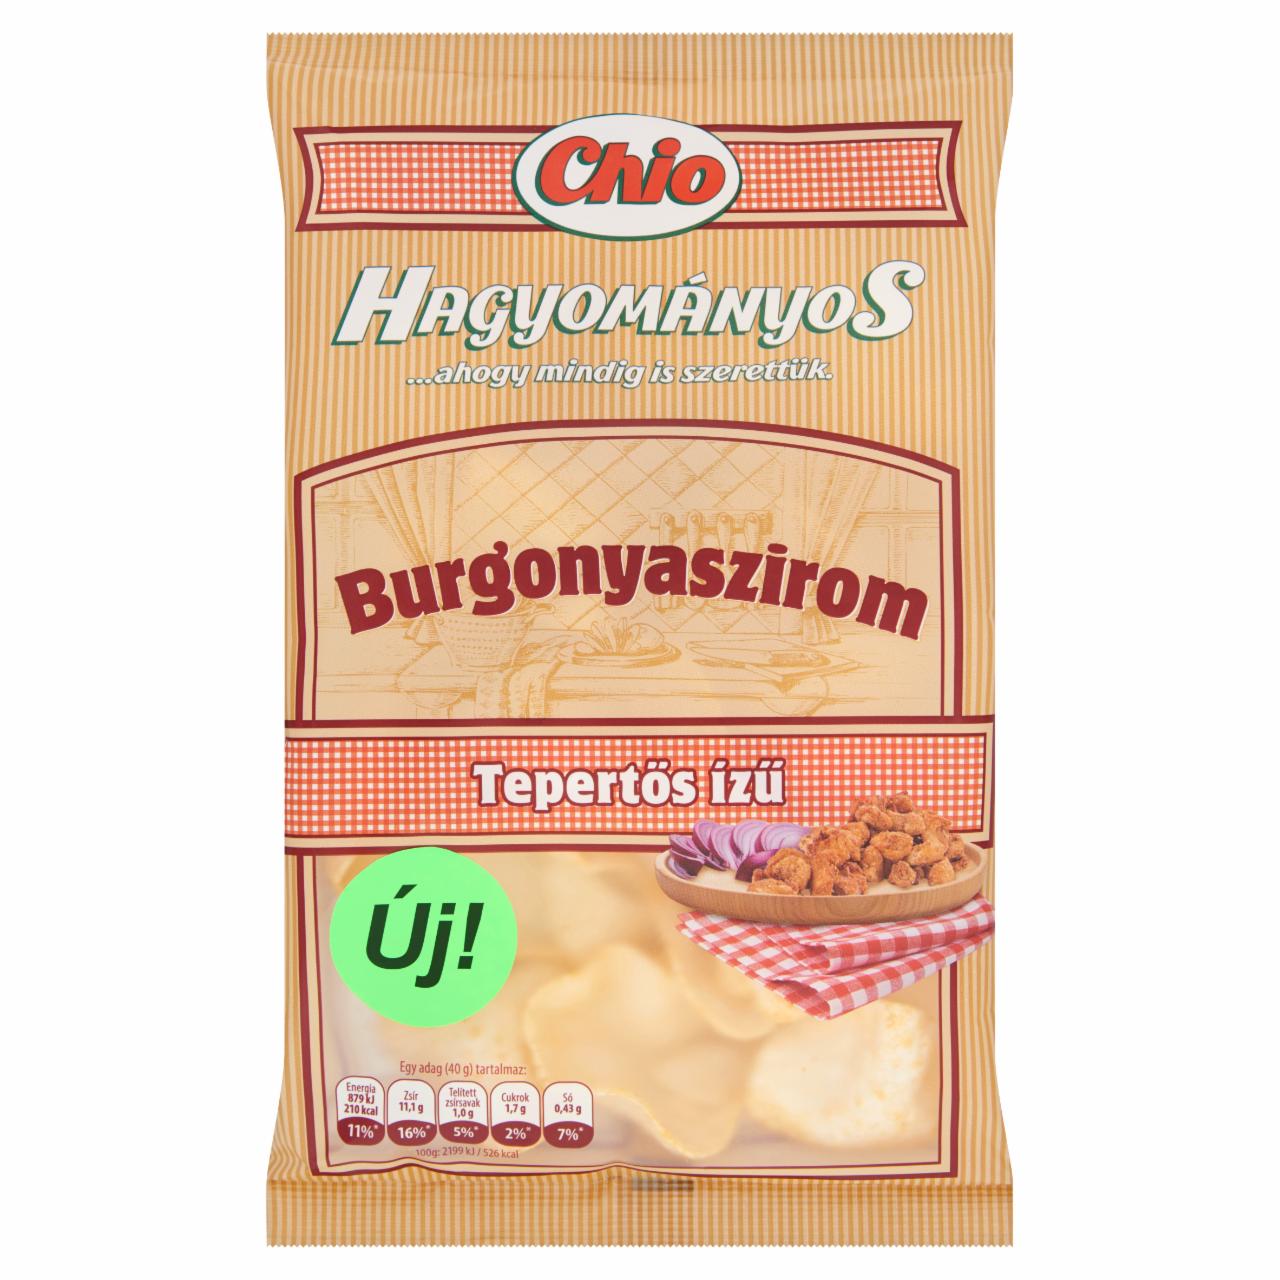 Képek - Chio Hagyományos tepertős ízű burgonyaszirom 40 g